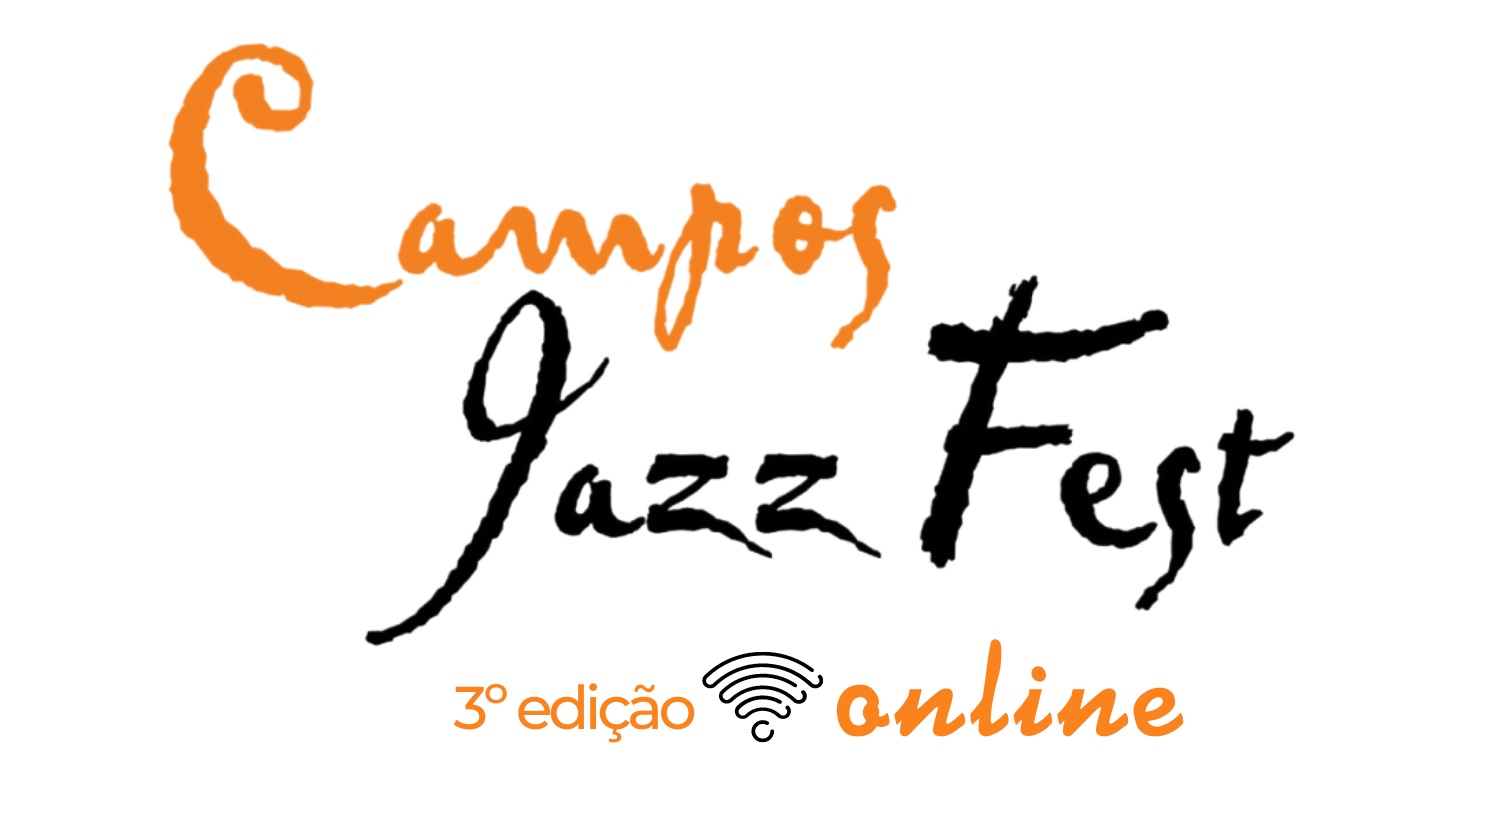 Campos Jazz Fest - 3º edição online, logo. Divulgação.